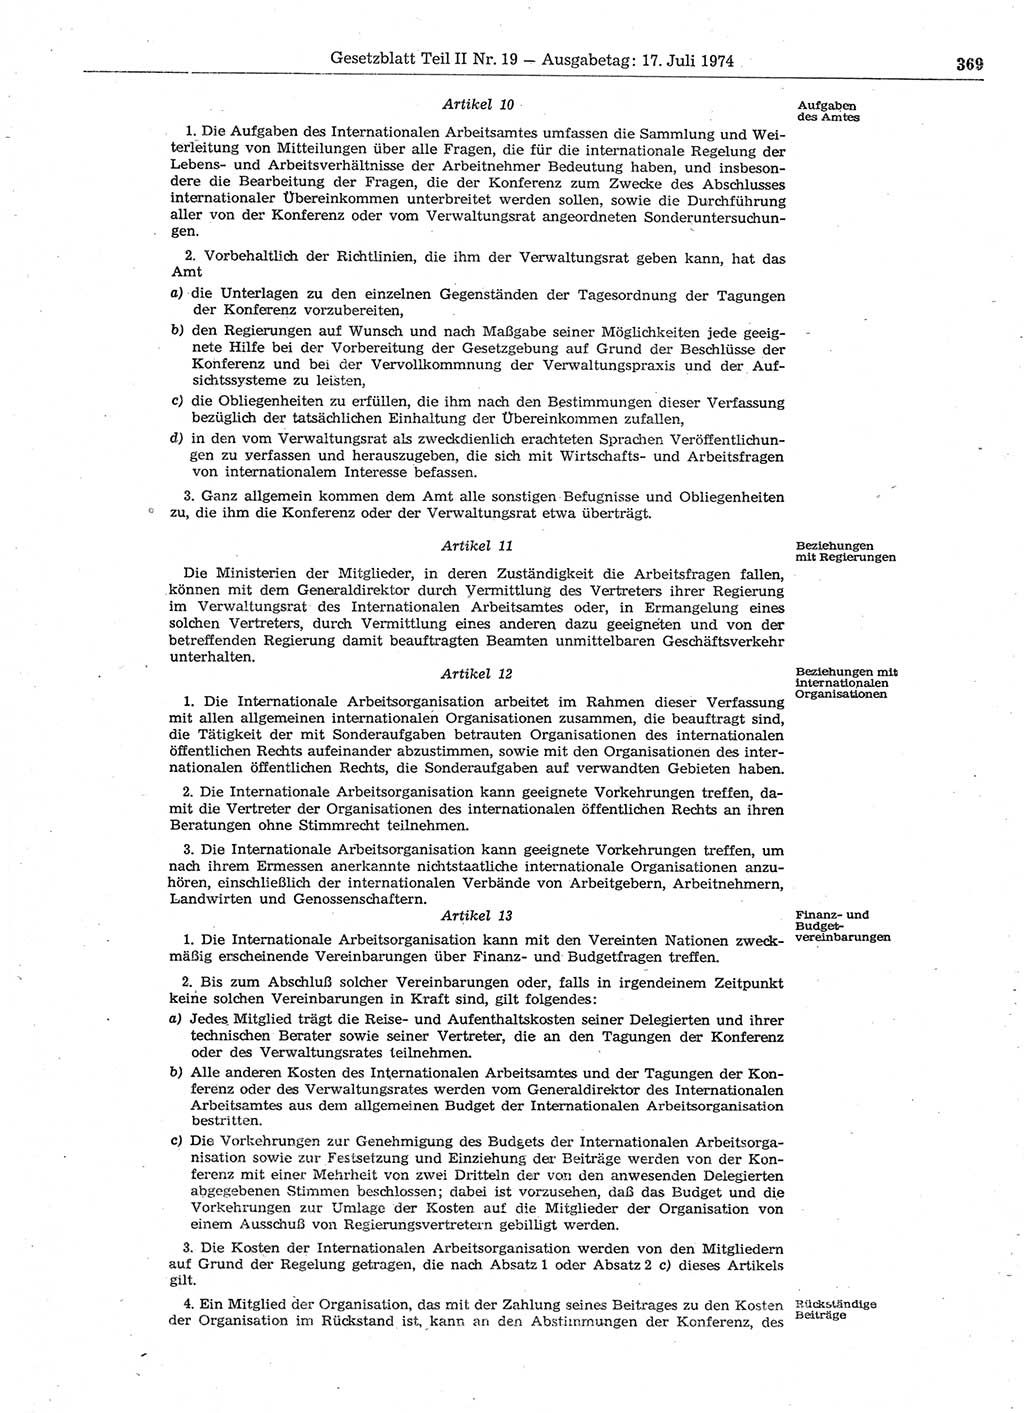 Gesetzblatt (GBl.) der Deutschen Demokratischen Republik (DDR) Teil ⅠⅠ 1974, Seite 369 (GBl. DDR ⅠⅠ 1974, S. 369)